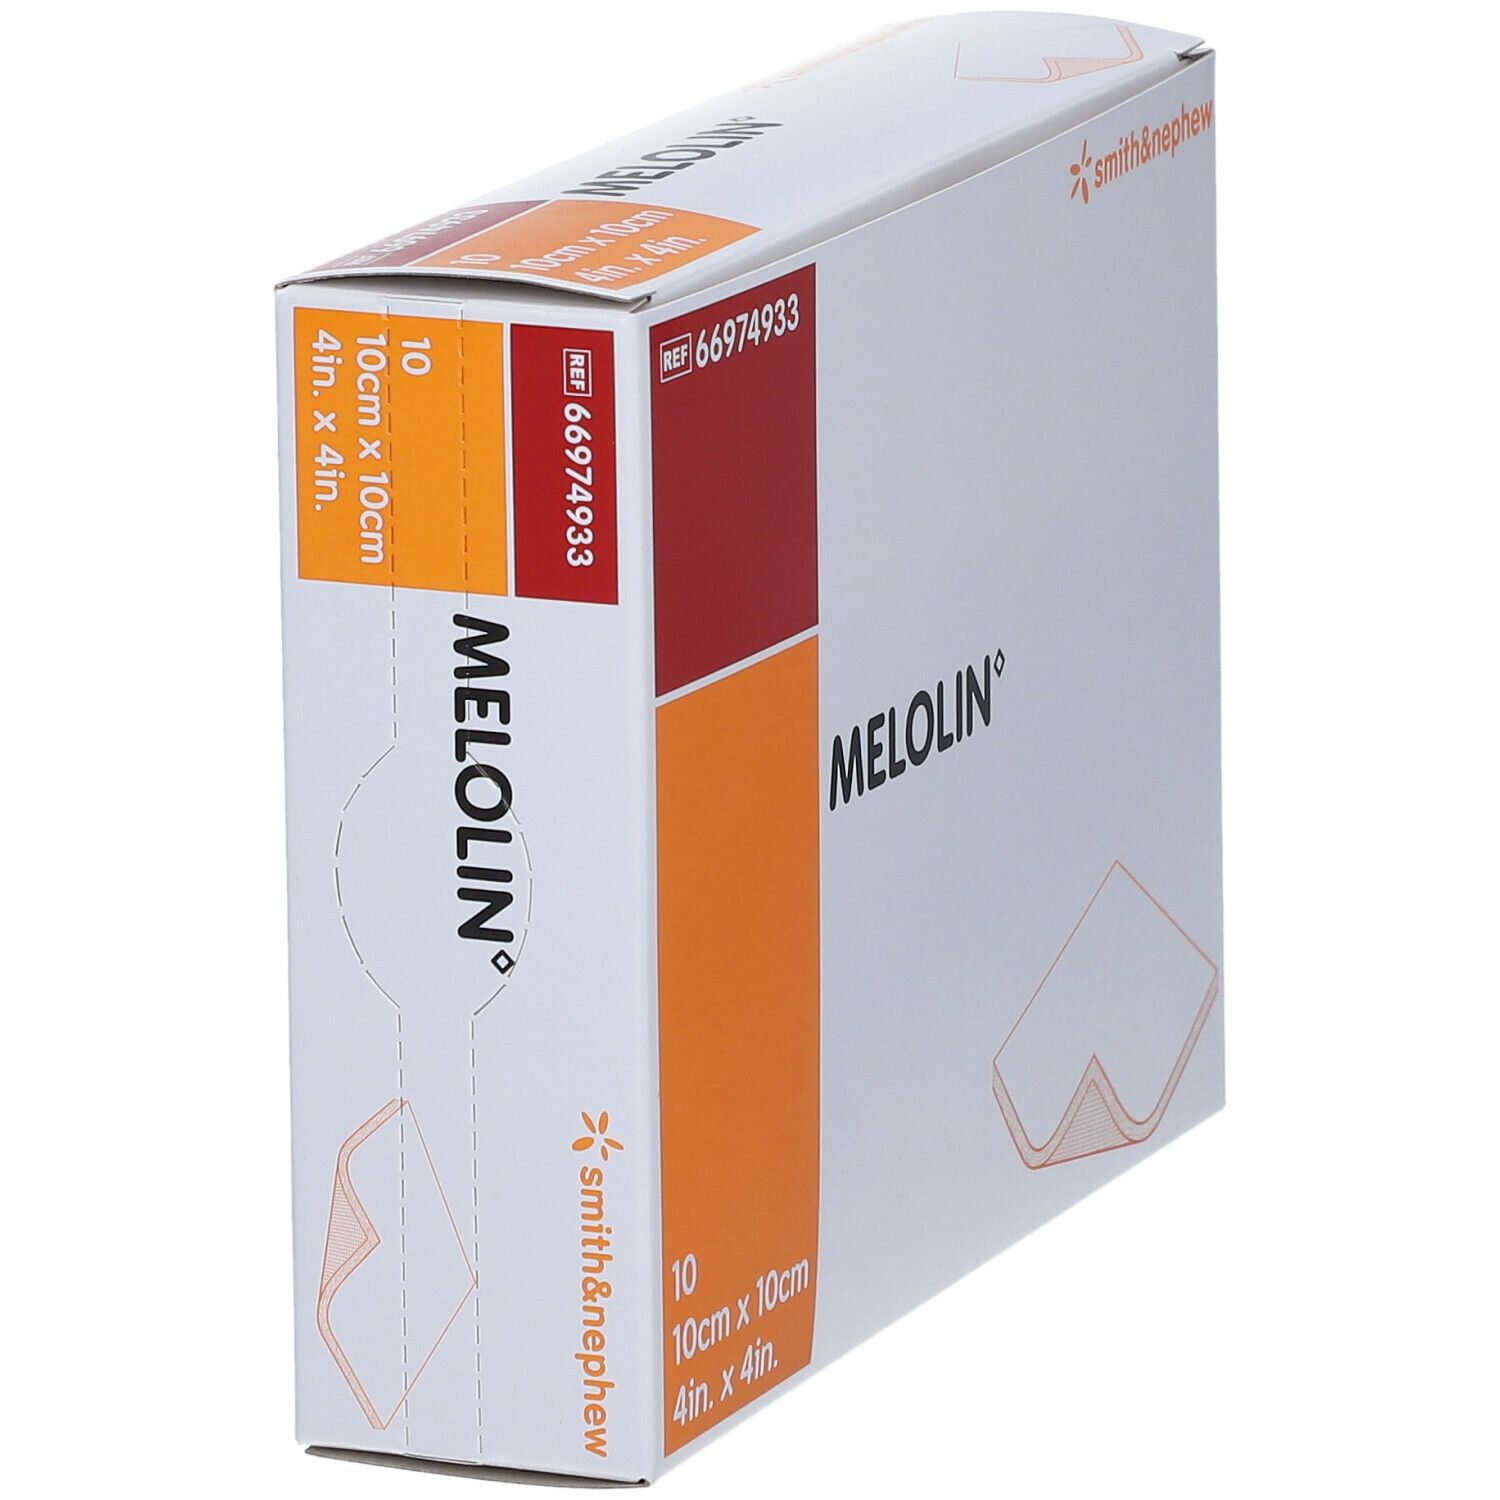 MELOLIN® Wundauflagen steril 10x10cm